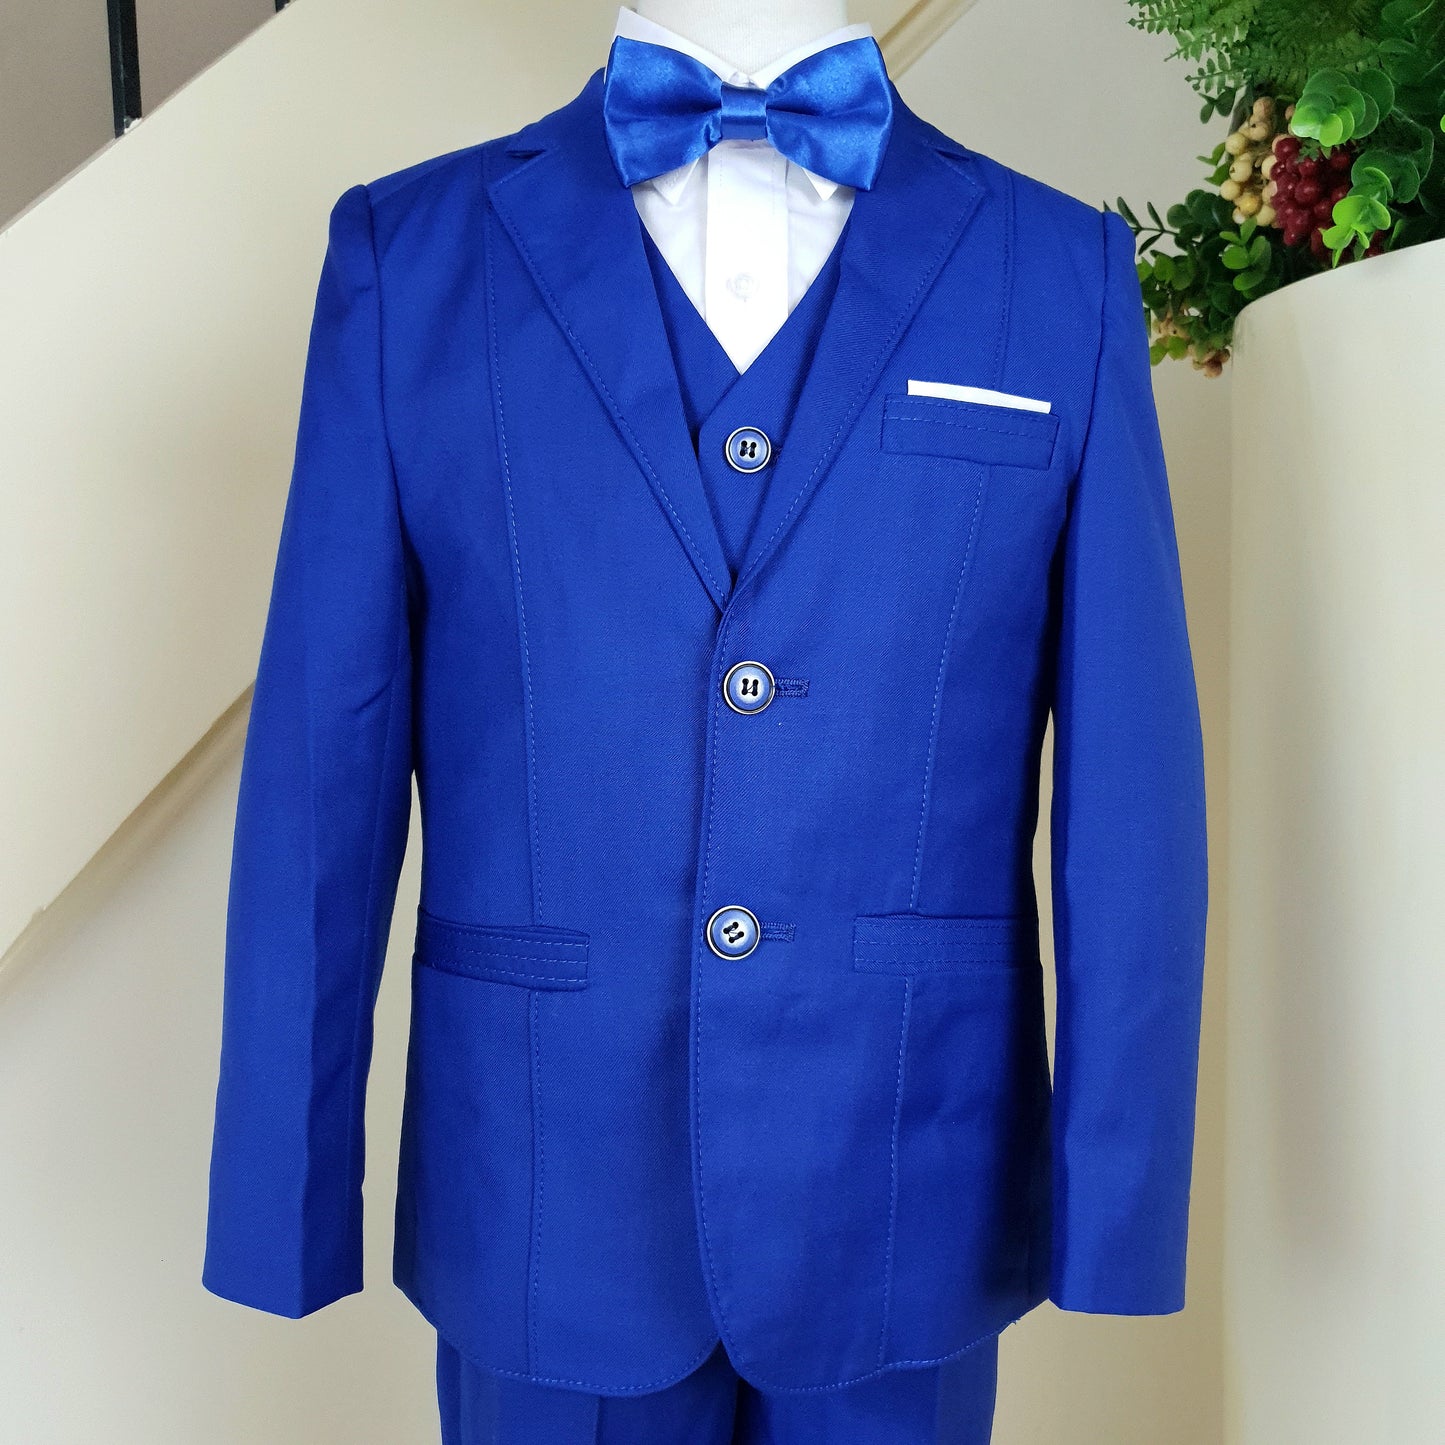 Classic royal blue suit set